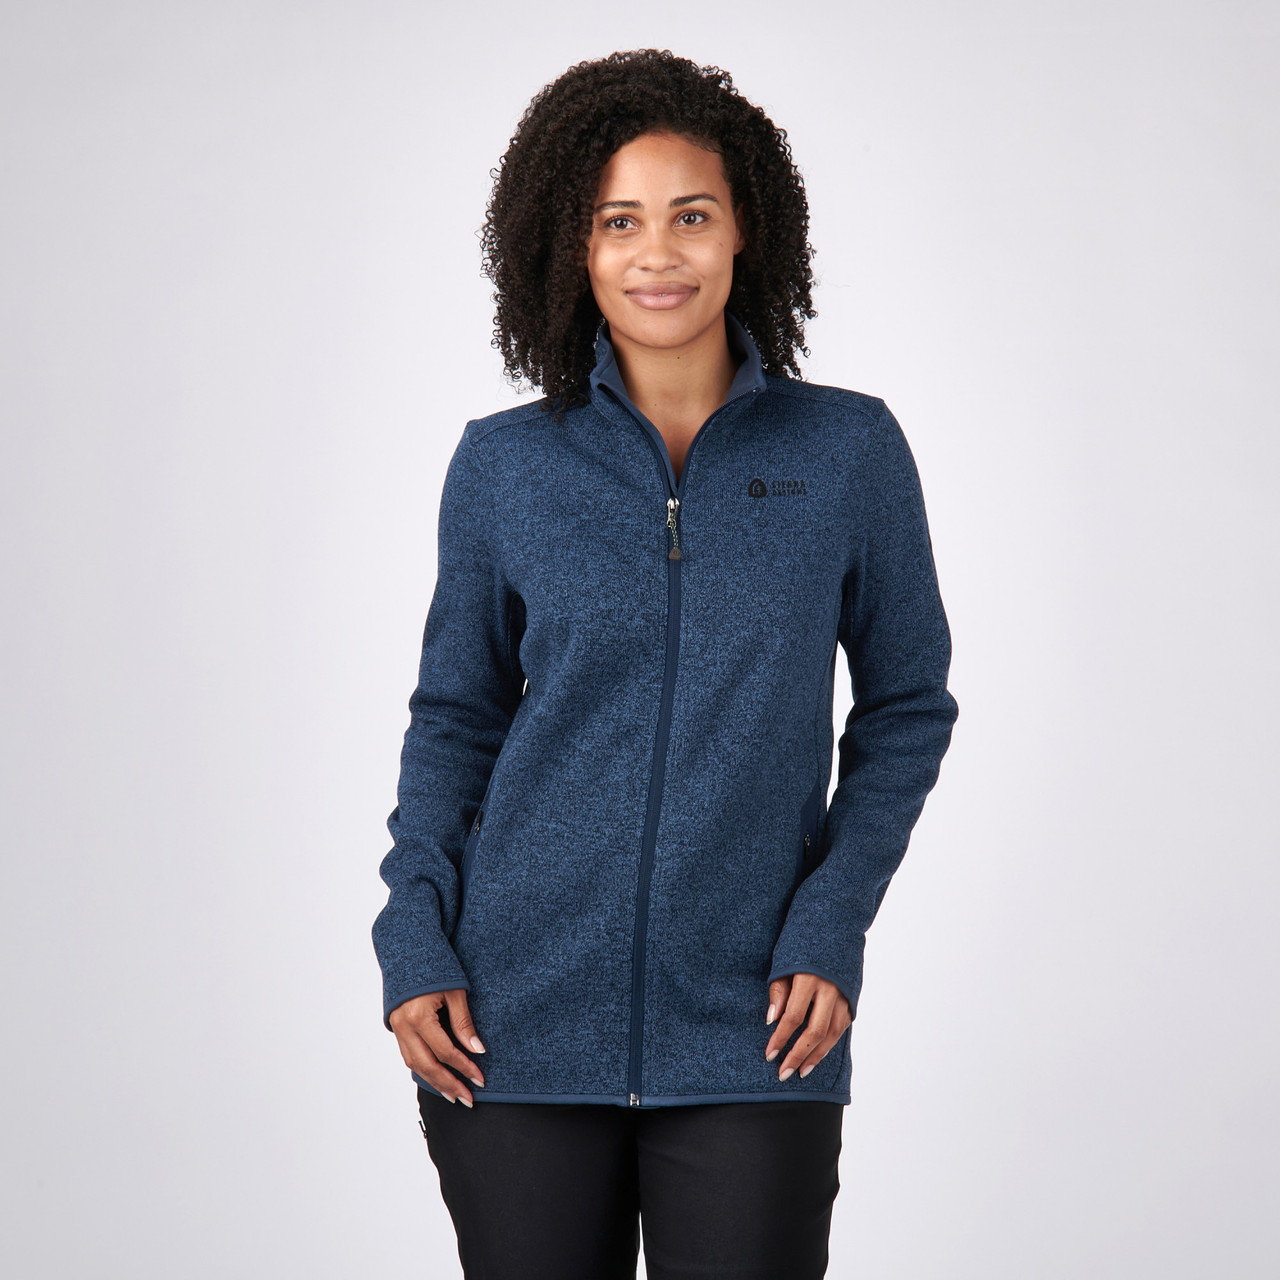 moeilijk Depressie Ontwikkelen Women's Foxboro Sweater Knit Jacket | Sierra Designs